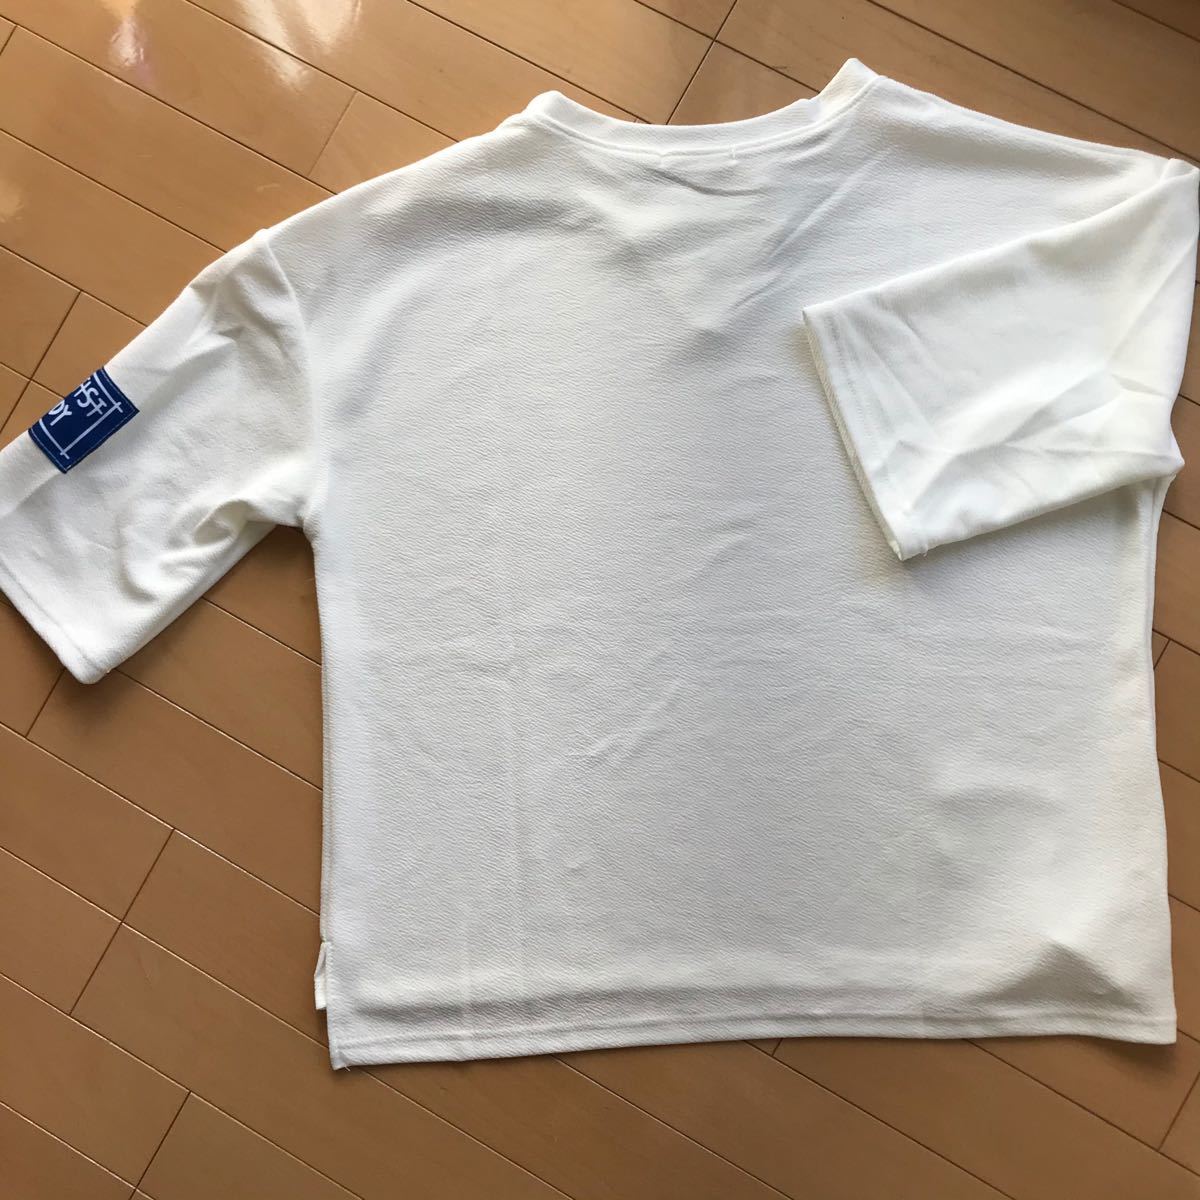 Tシャツ 韓国 ストリート 半袖 七部袖 7部袖 シンプル オーバーサイズ L 白 ホワイト クルーネック 無地 カットソー